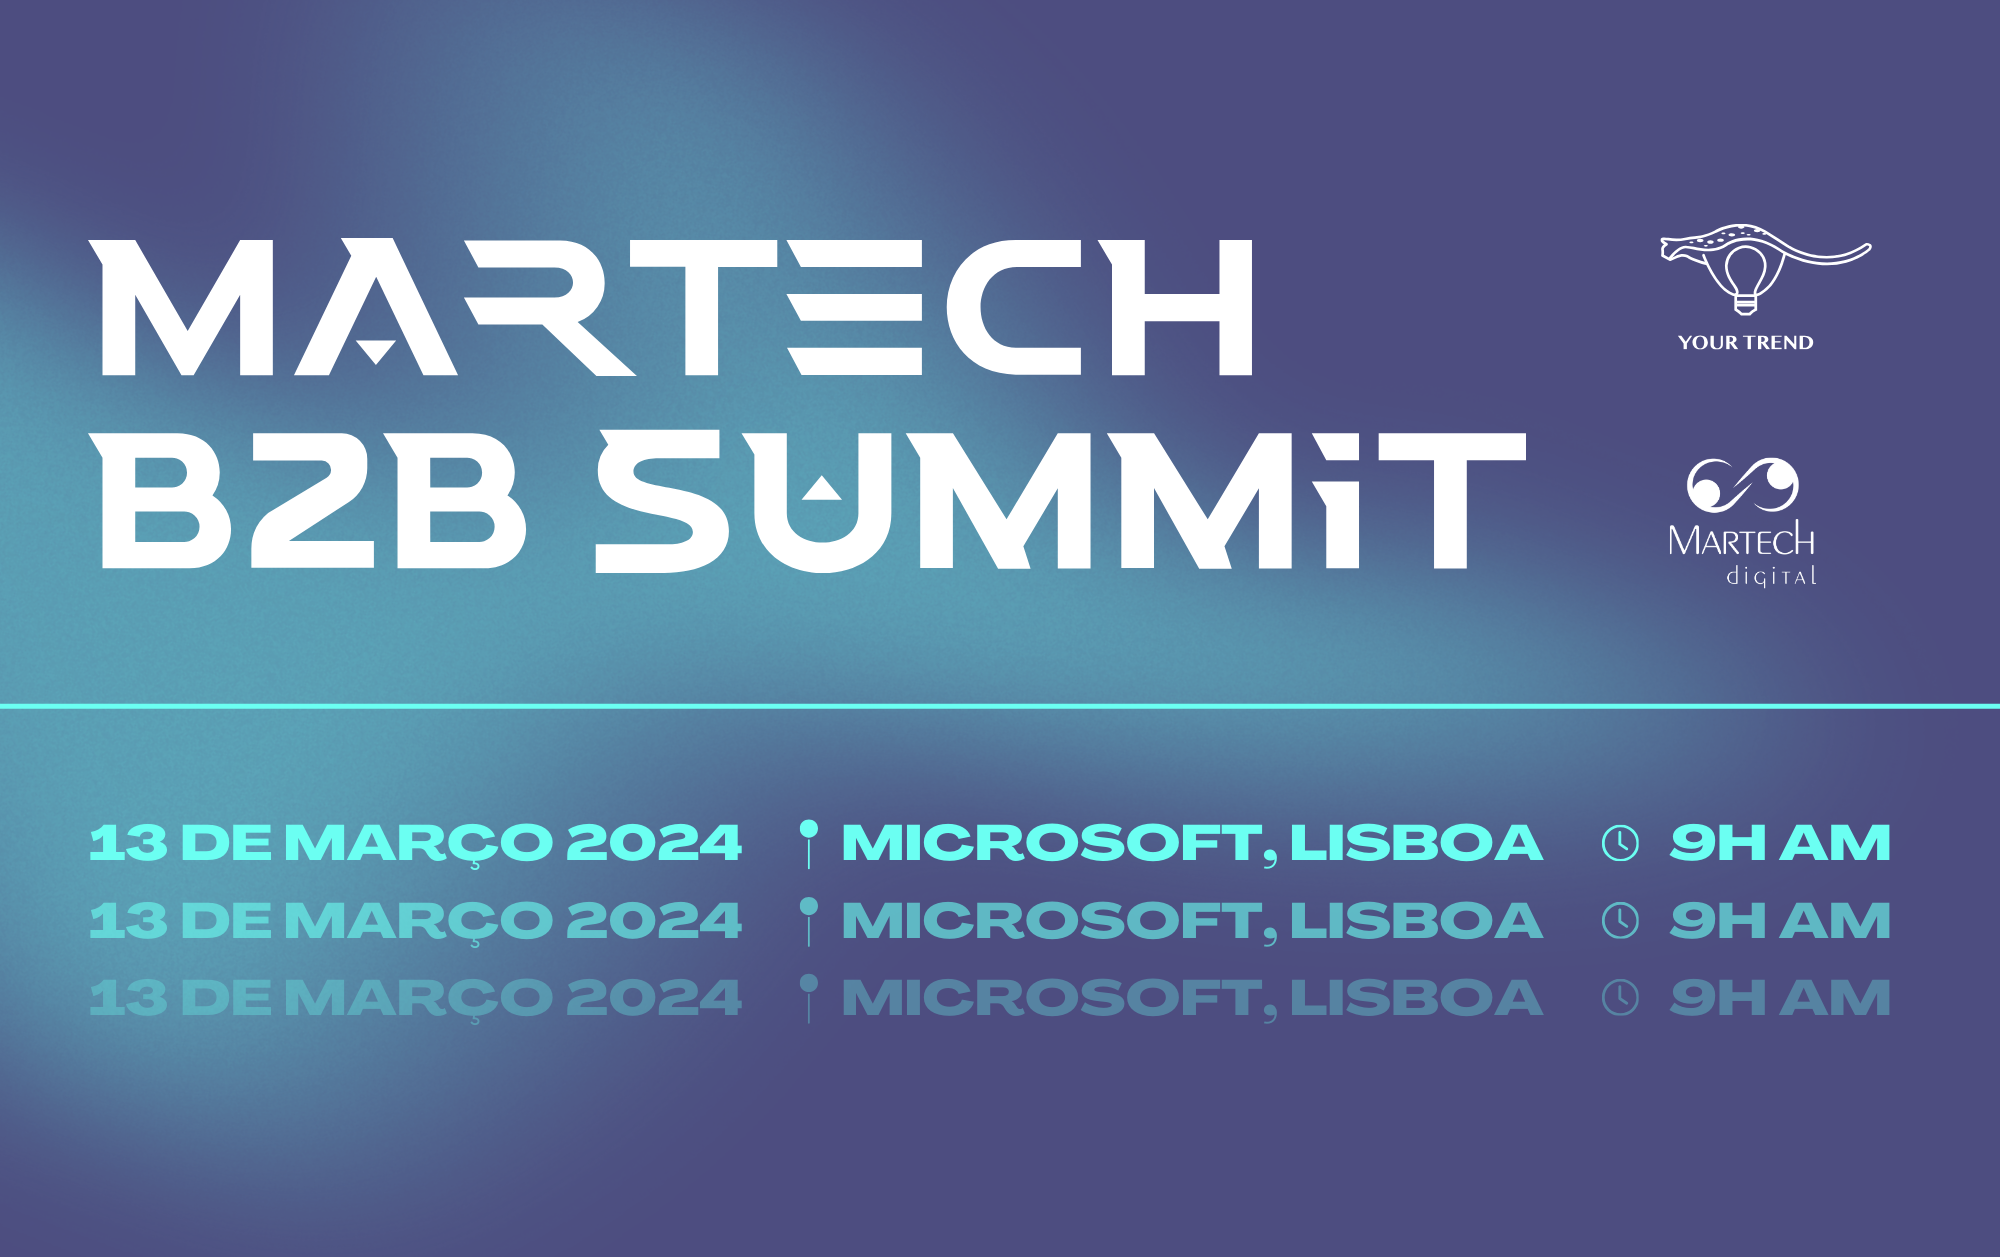 Martech B2B Summit 2024